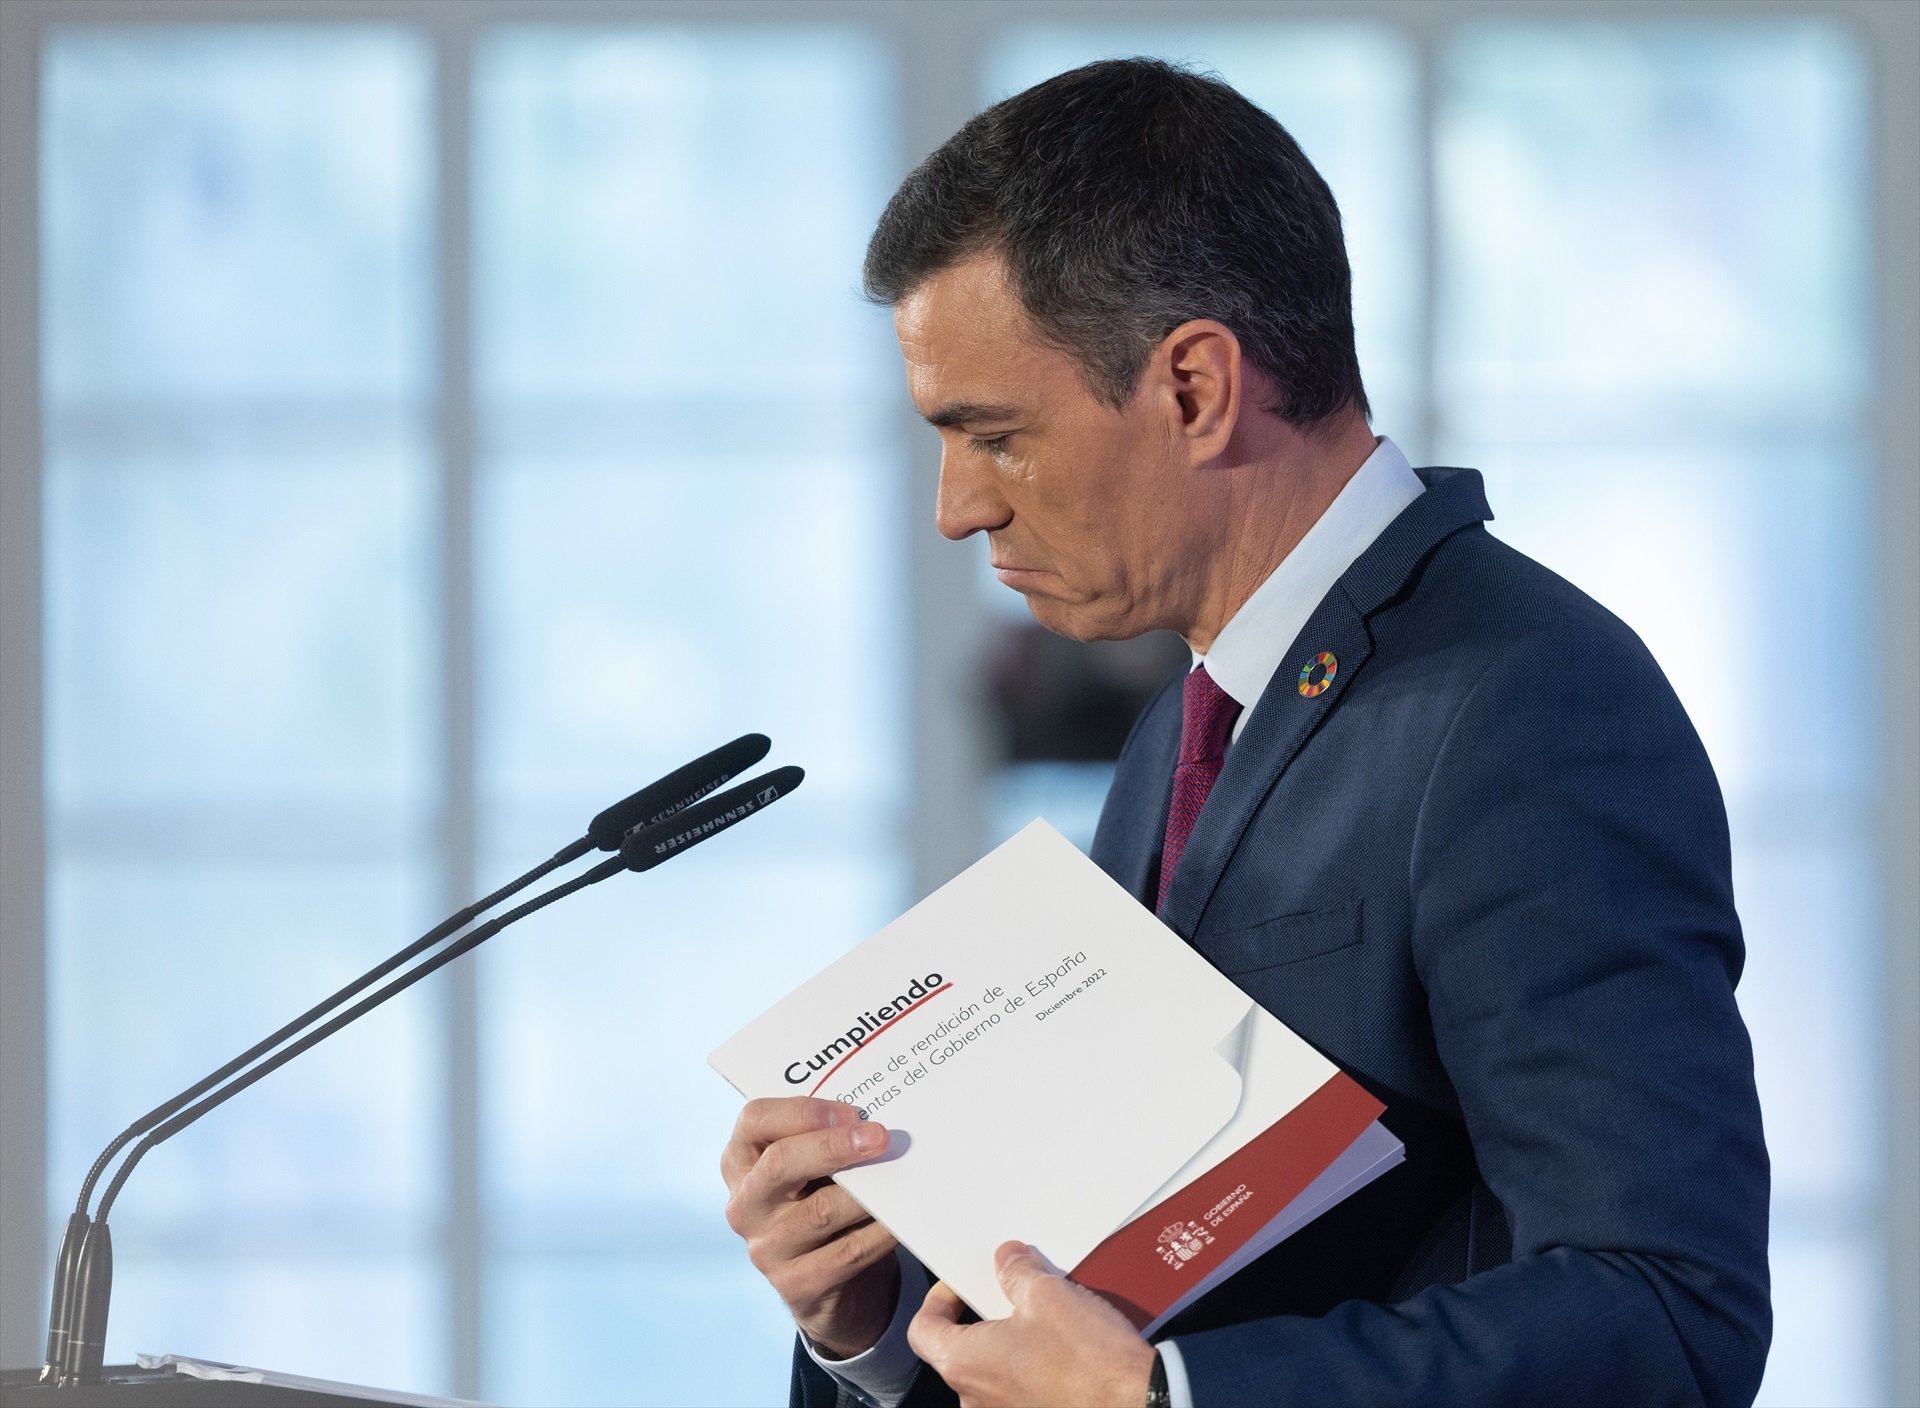 Els espanyols suspenen tots els ministres de Pedro Sánchez: Marlaska, el més mal valorat